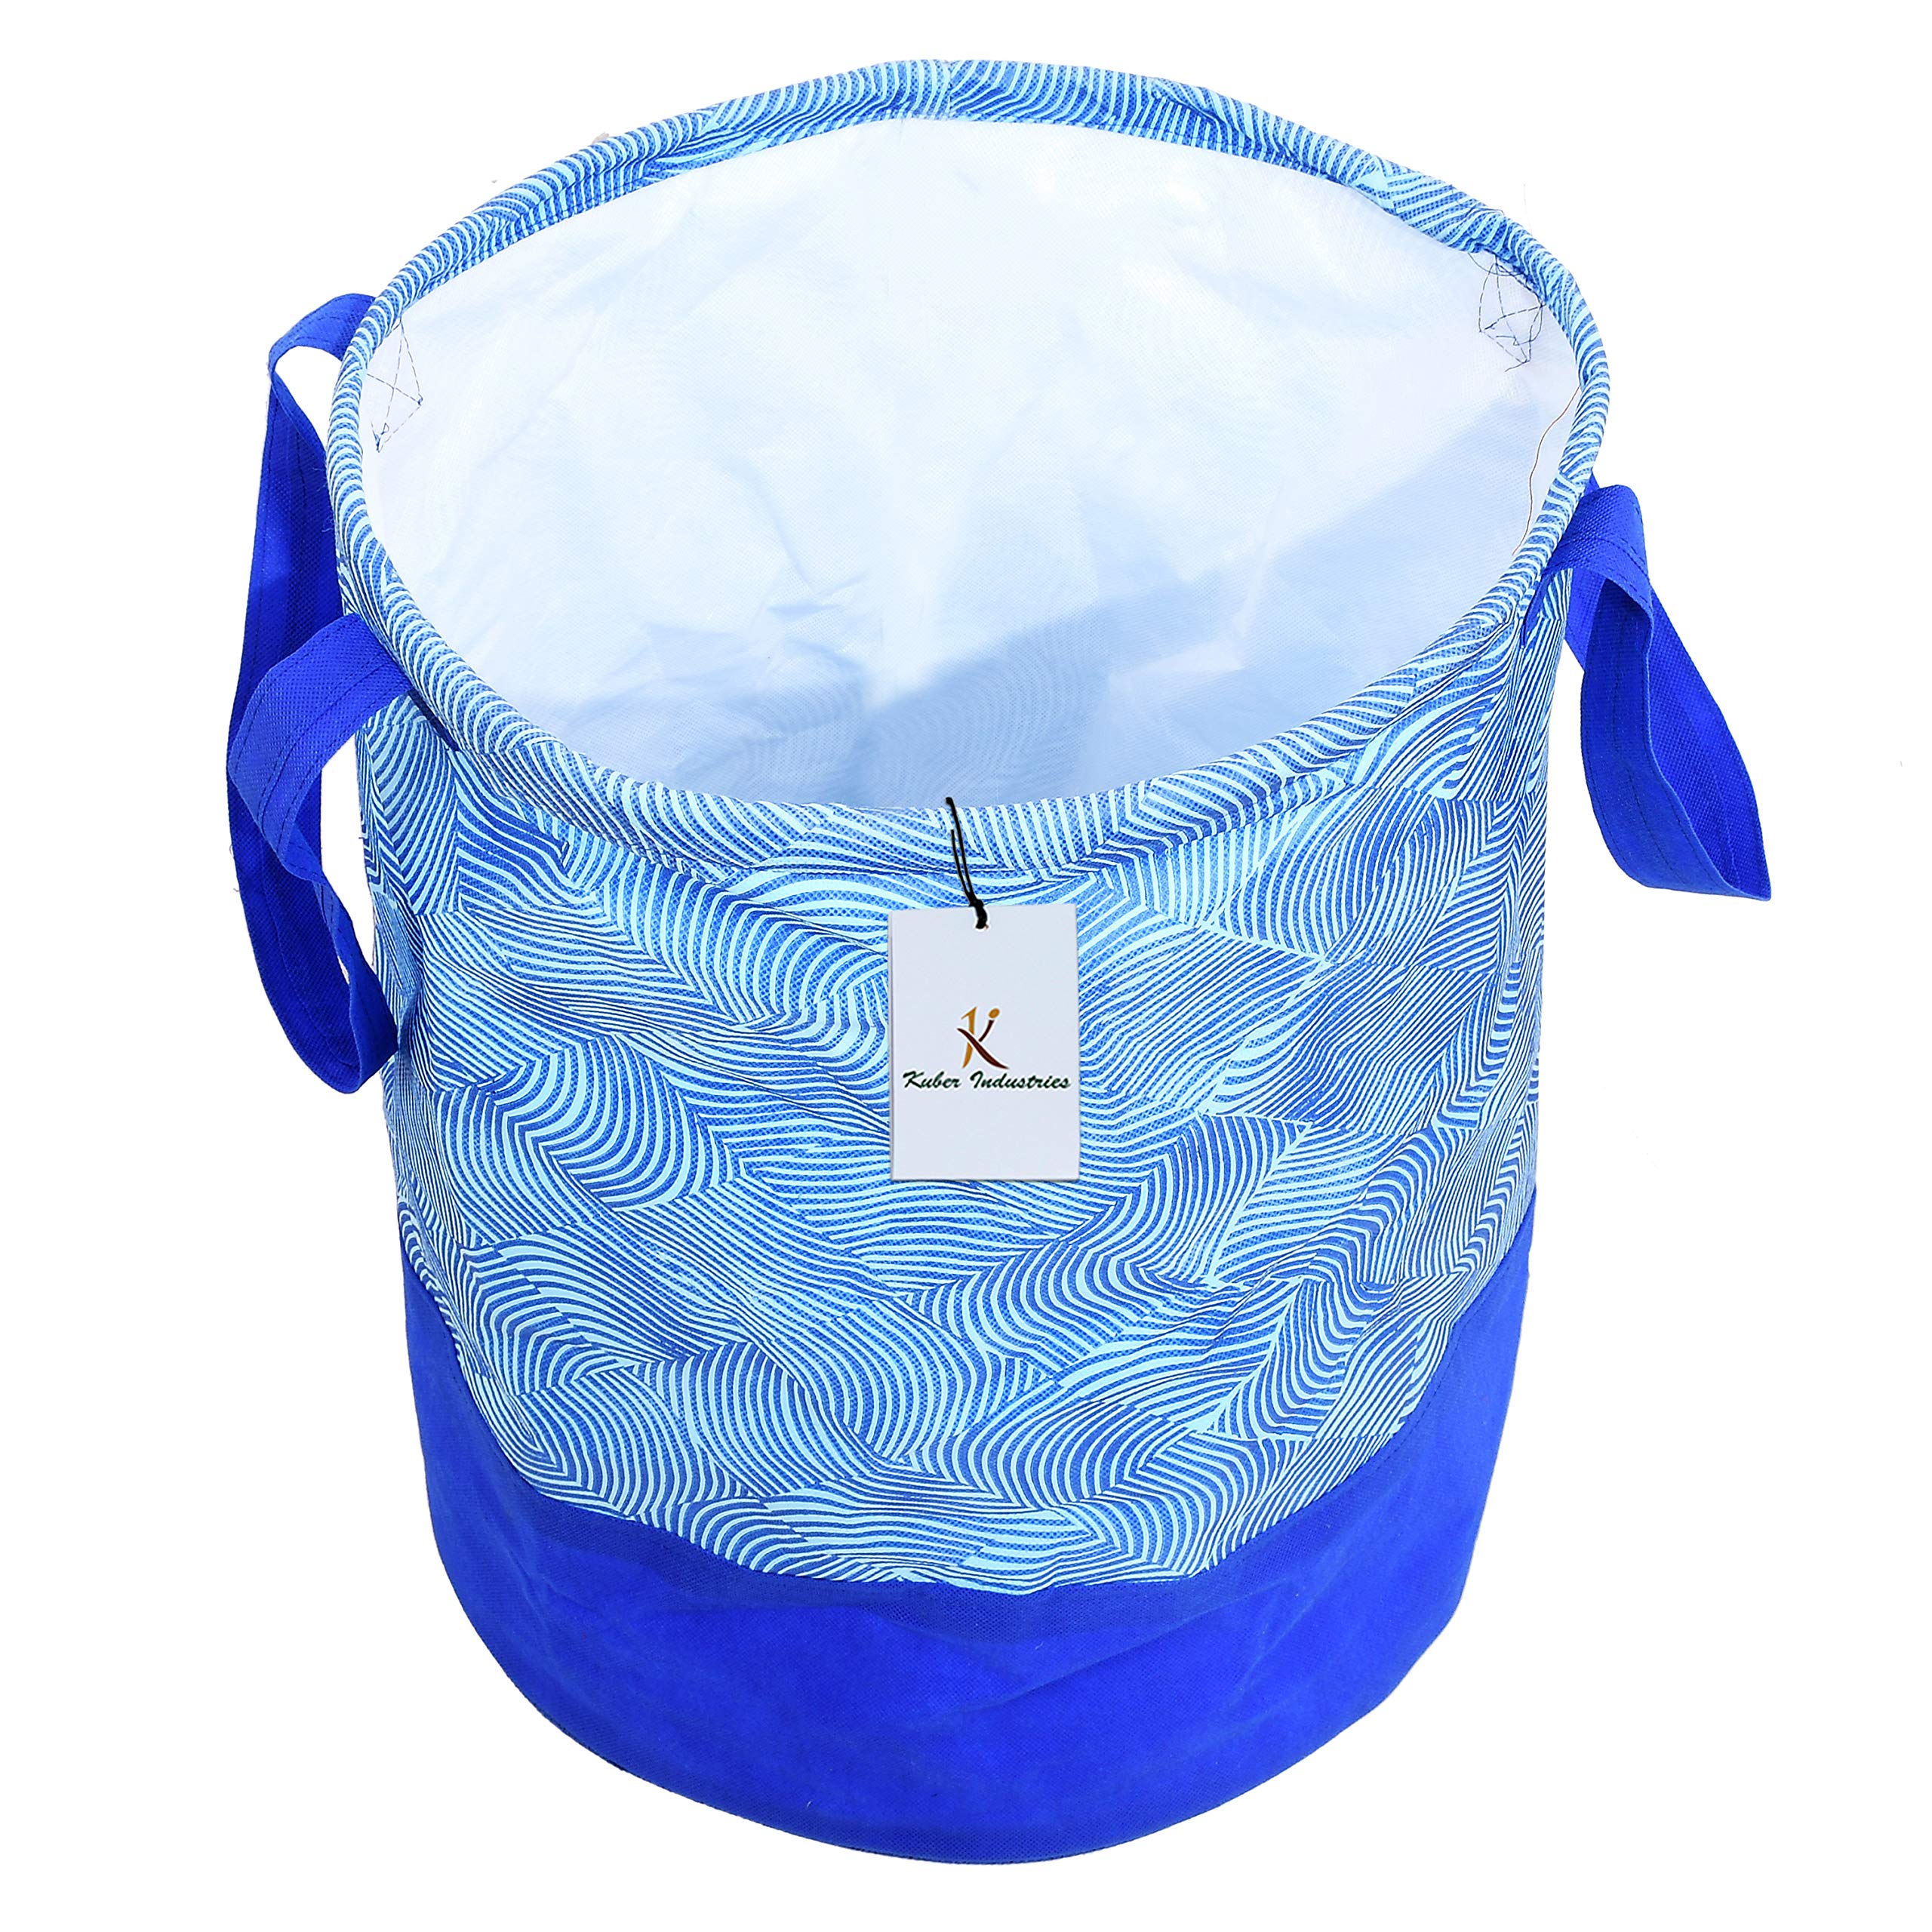 Kuber Industries Laheriya Printed Waterproof Canvas Laundry Bag|Toy Storage|Laundry Basket Organizer 45 L |Pack of 2 (Blue)